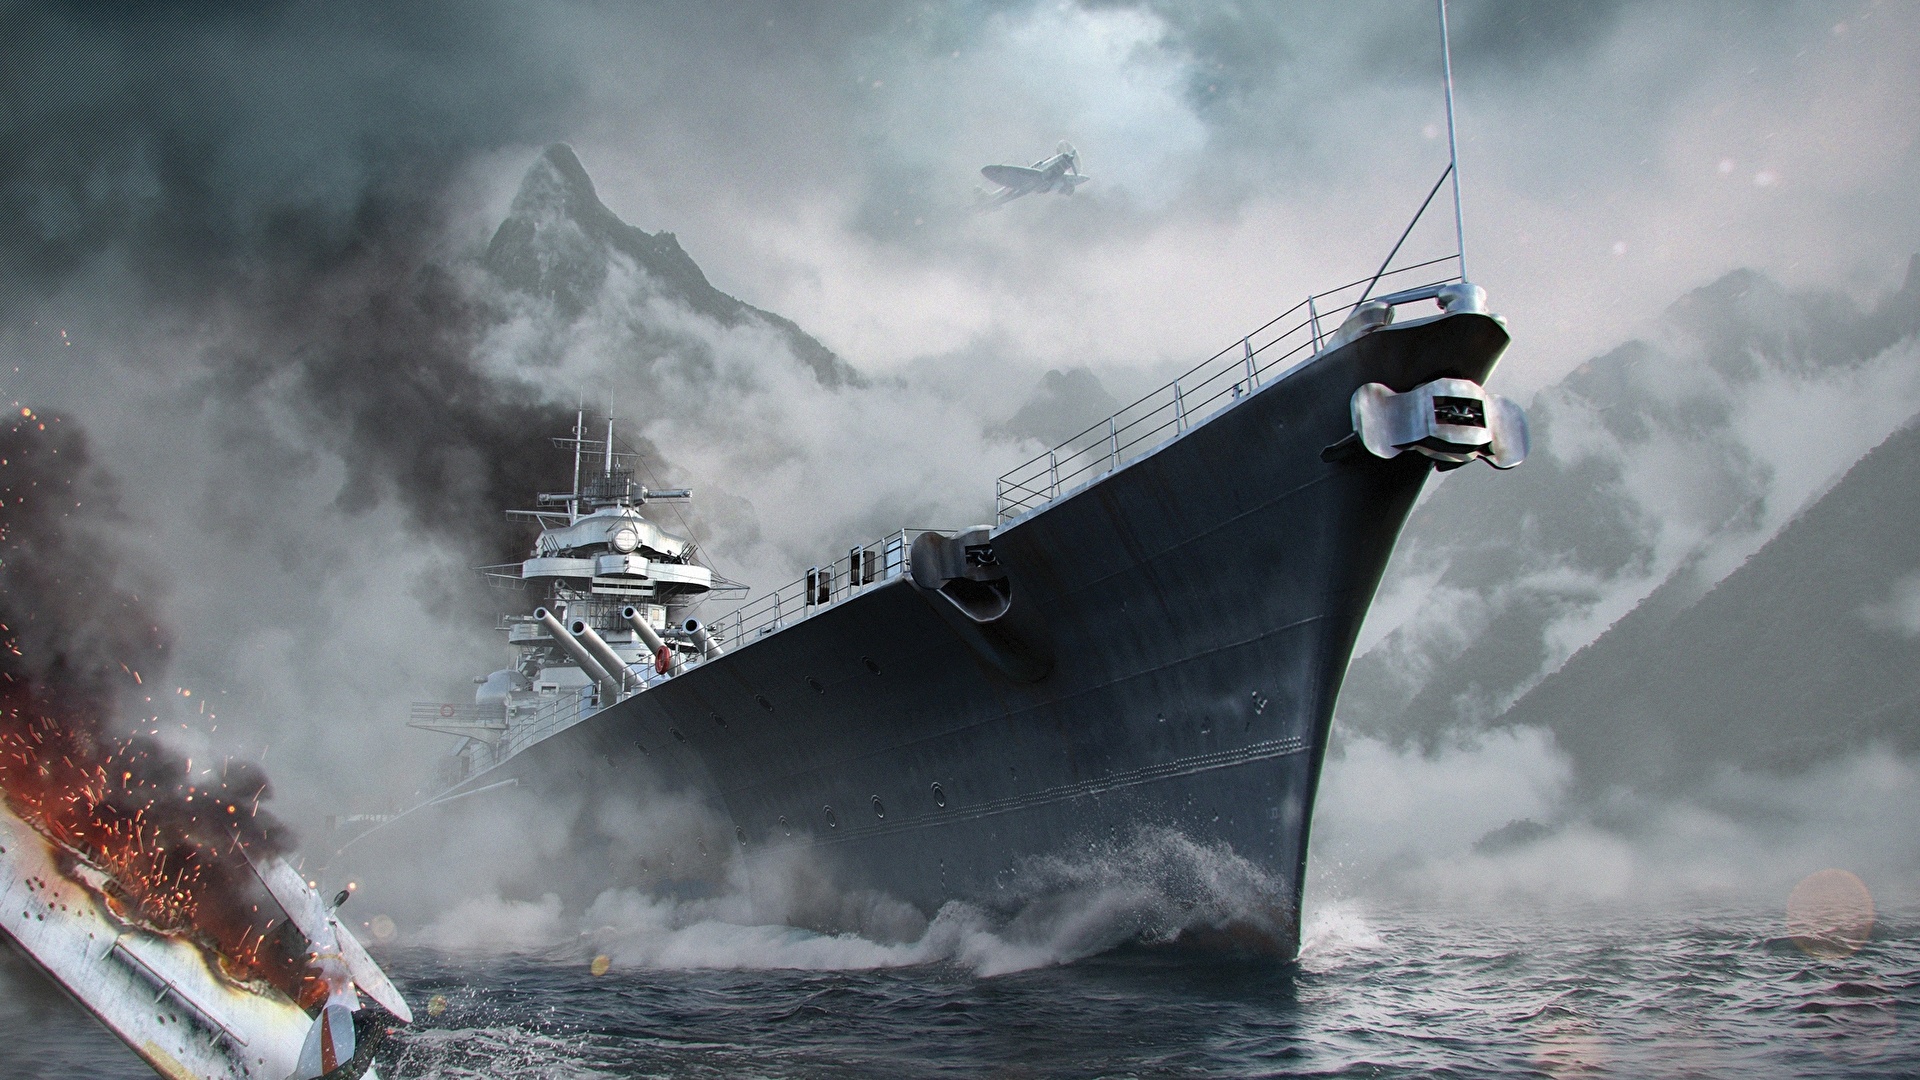 壁紙 19x1080 World Of Warship 船 Wargaming Net Wows Bismarck ゲーム 陸軍 ダウンロード 写真